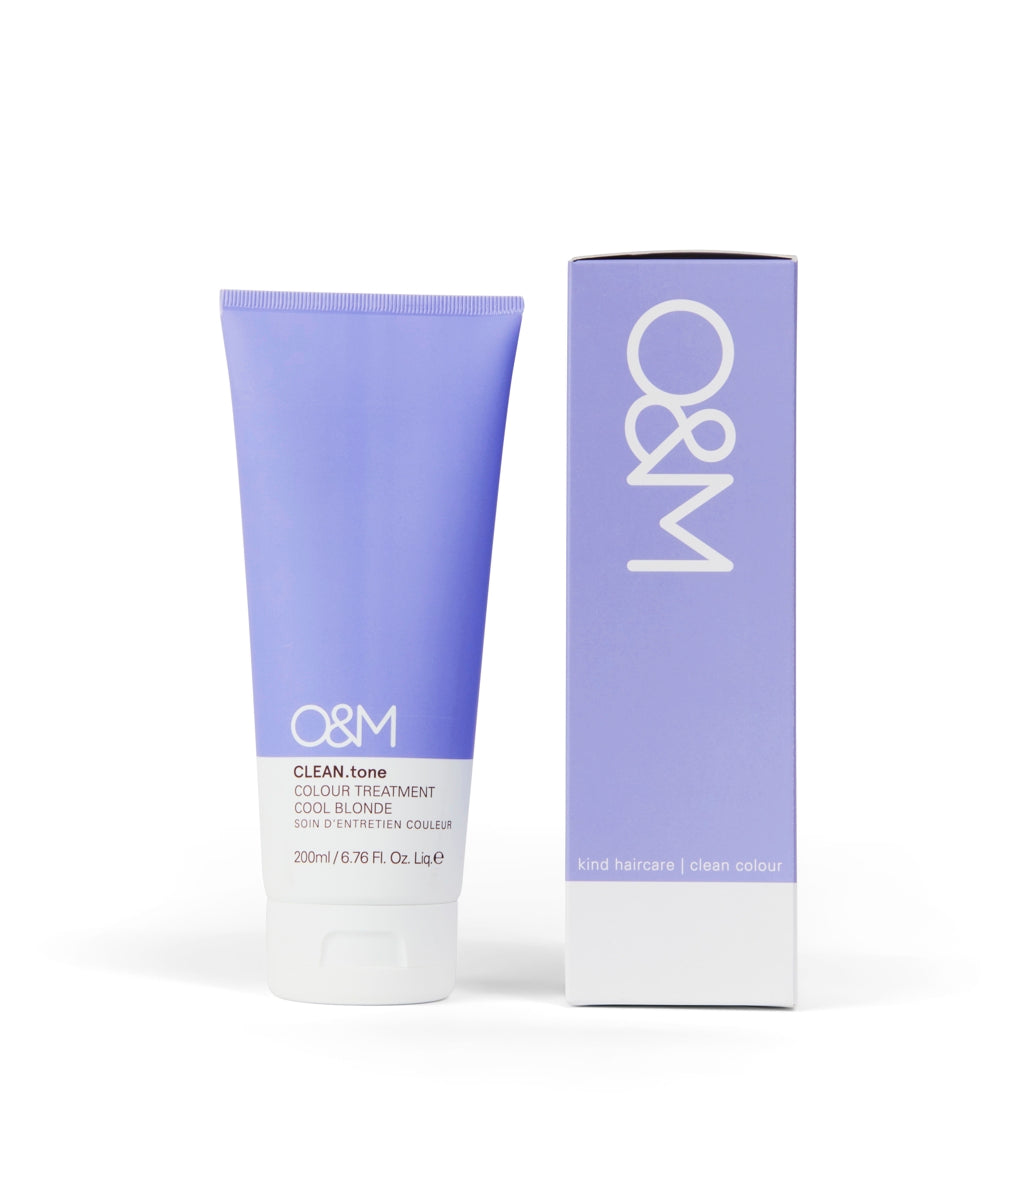 O&M CLEAN.tone Cool Blonde Colour Treatment 200ml